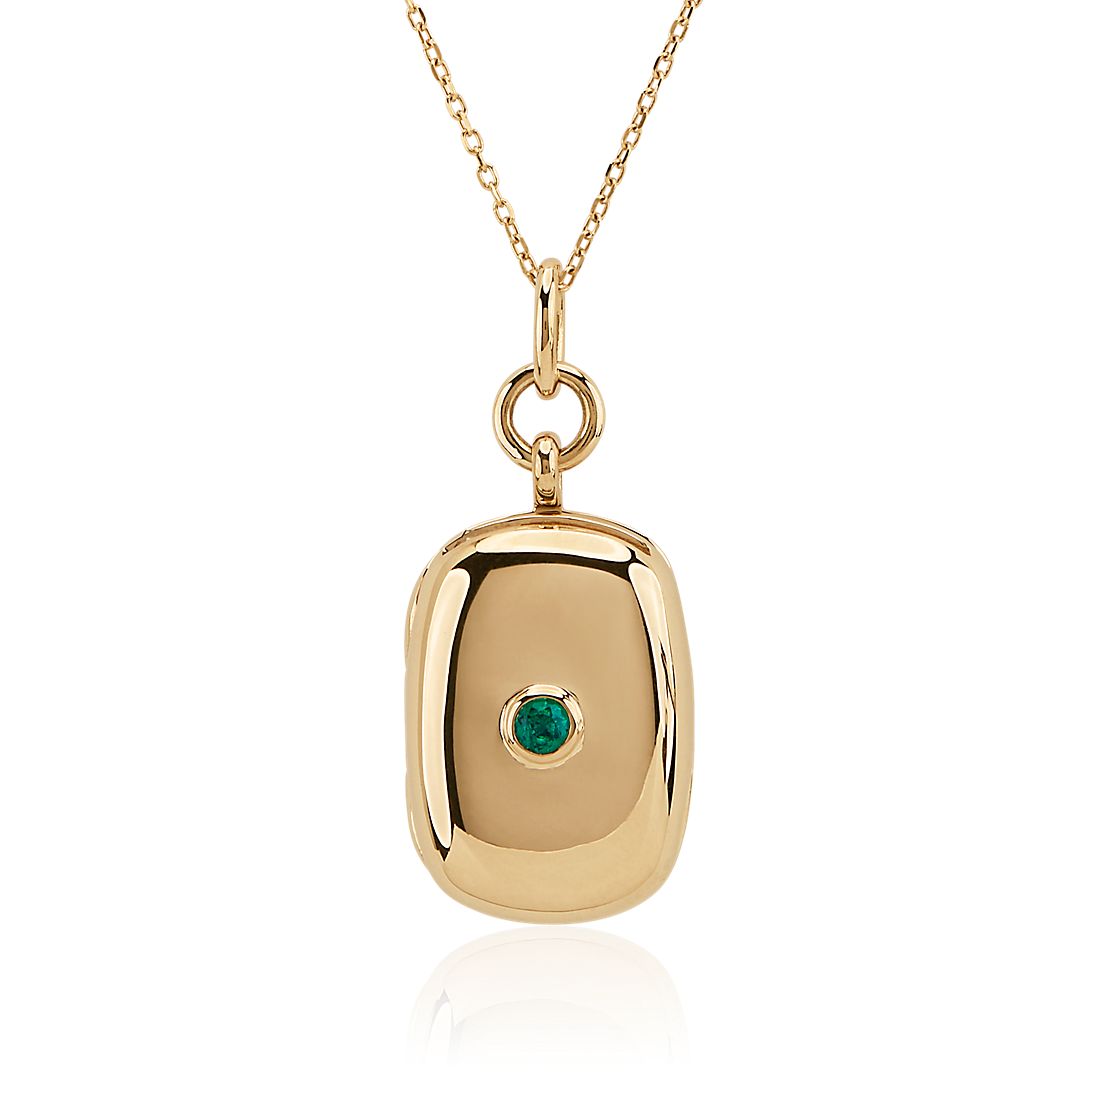 Monica Rich Kosann Rectangular Locket with Round Emerald in 18k Yellow Gold